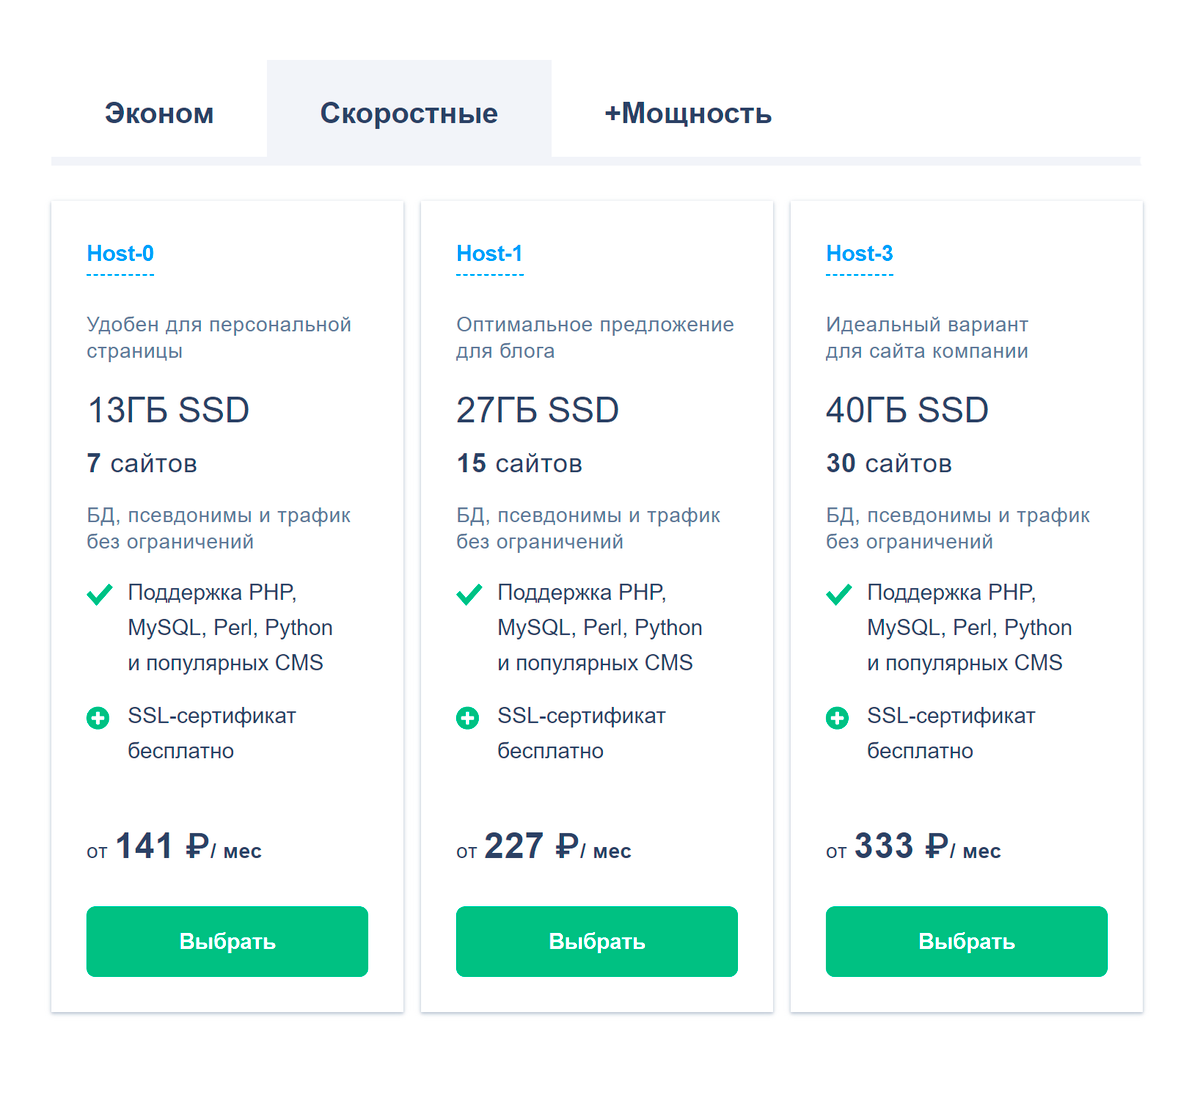 На сайте reg.ru стоимость услуг зависит от размера дискового пространства, количества сайтов, которое можно разместить на хостинге, поддержки CMS и других параметров. На самом дешевом тарифе CMS не поддерживается, так что он&nbsp;бы мне не подошел